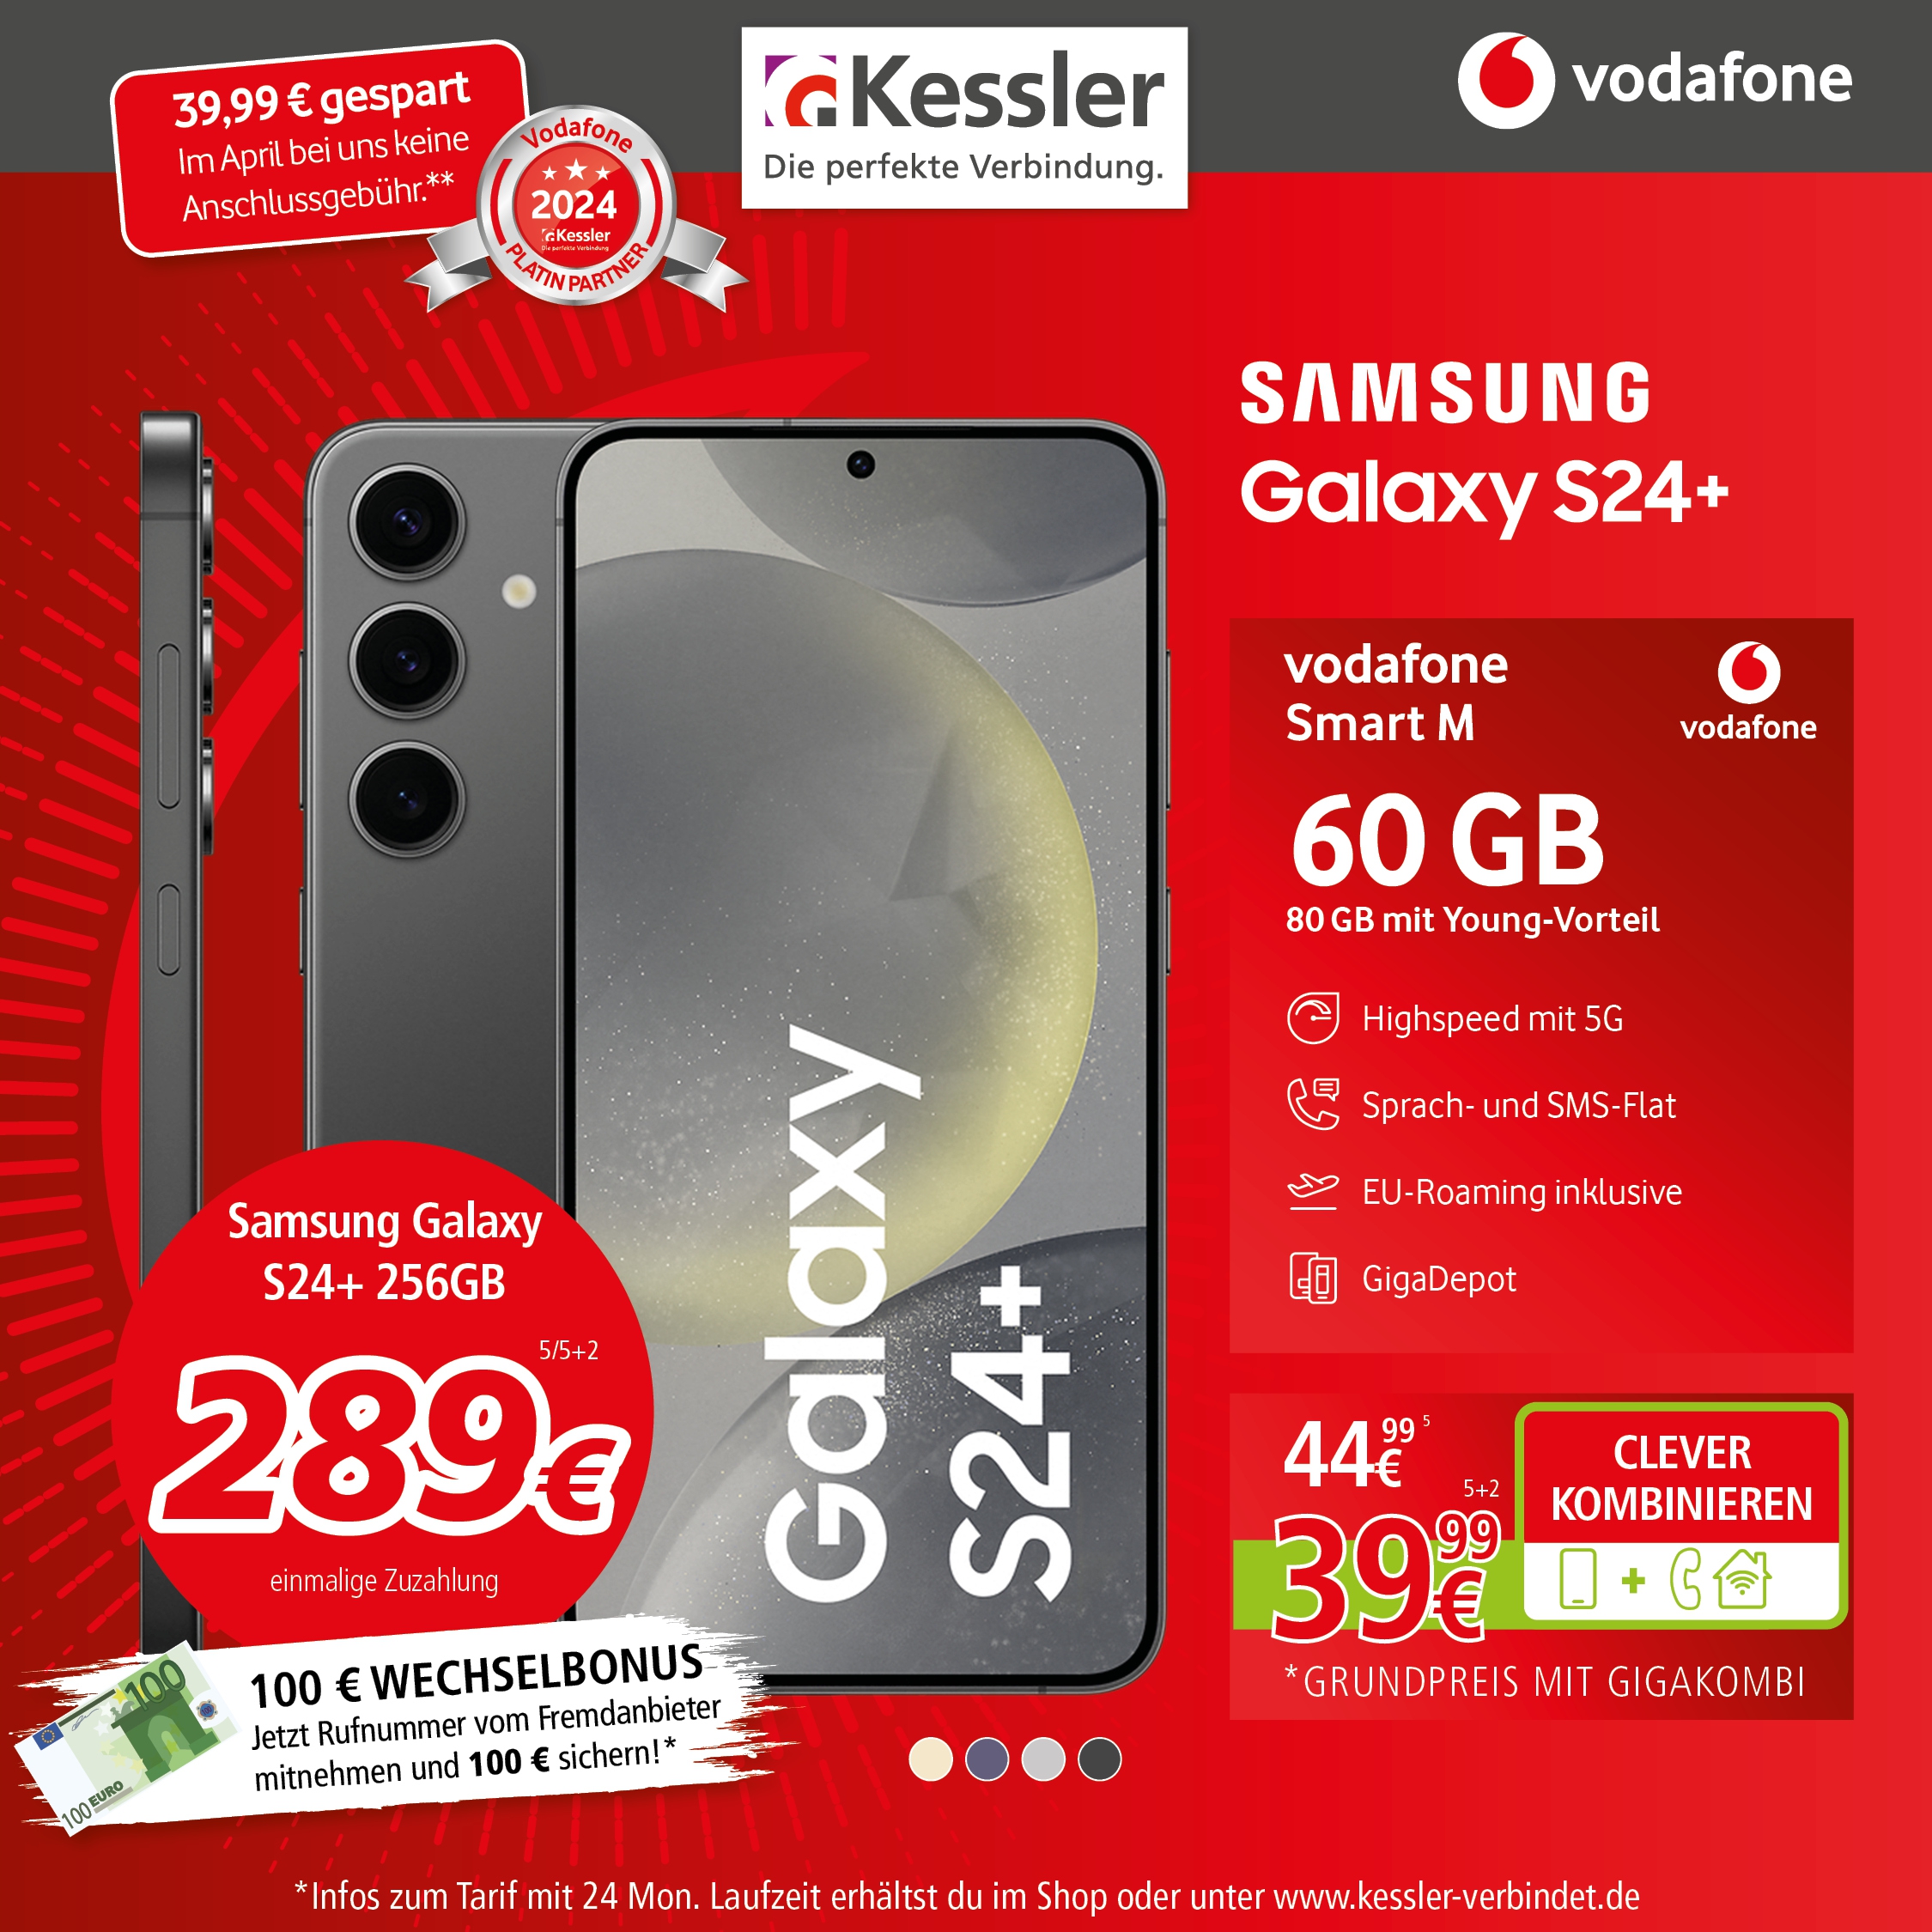 Vodafone Smart M mit Samsung Galaxy S24+